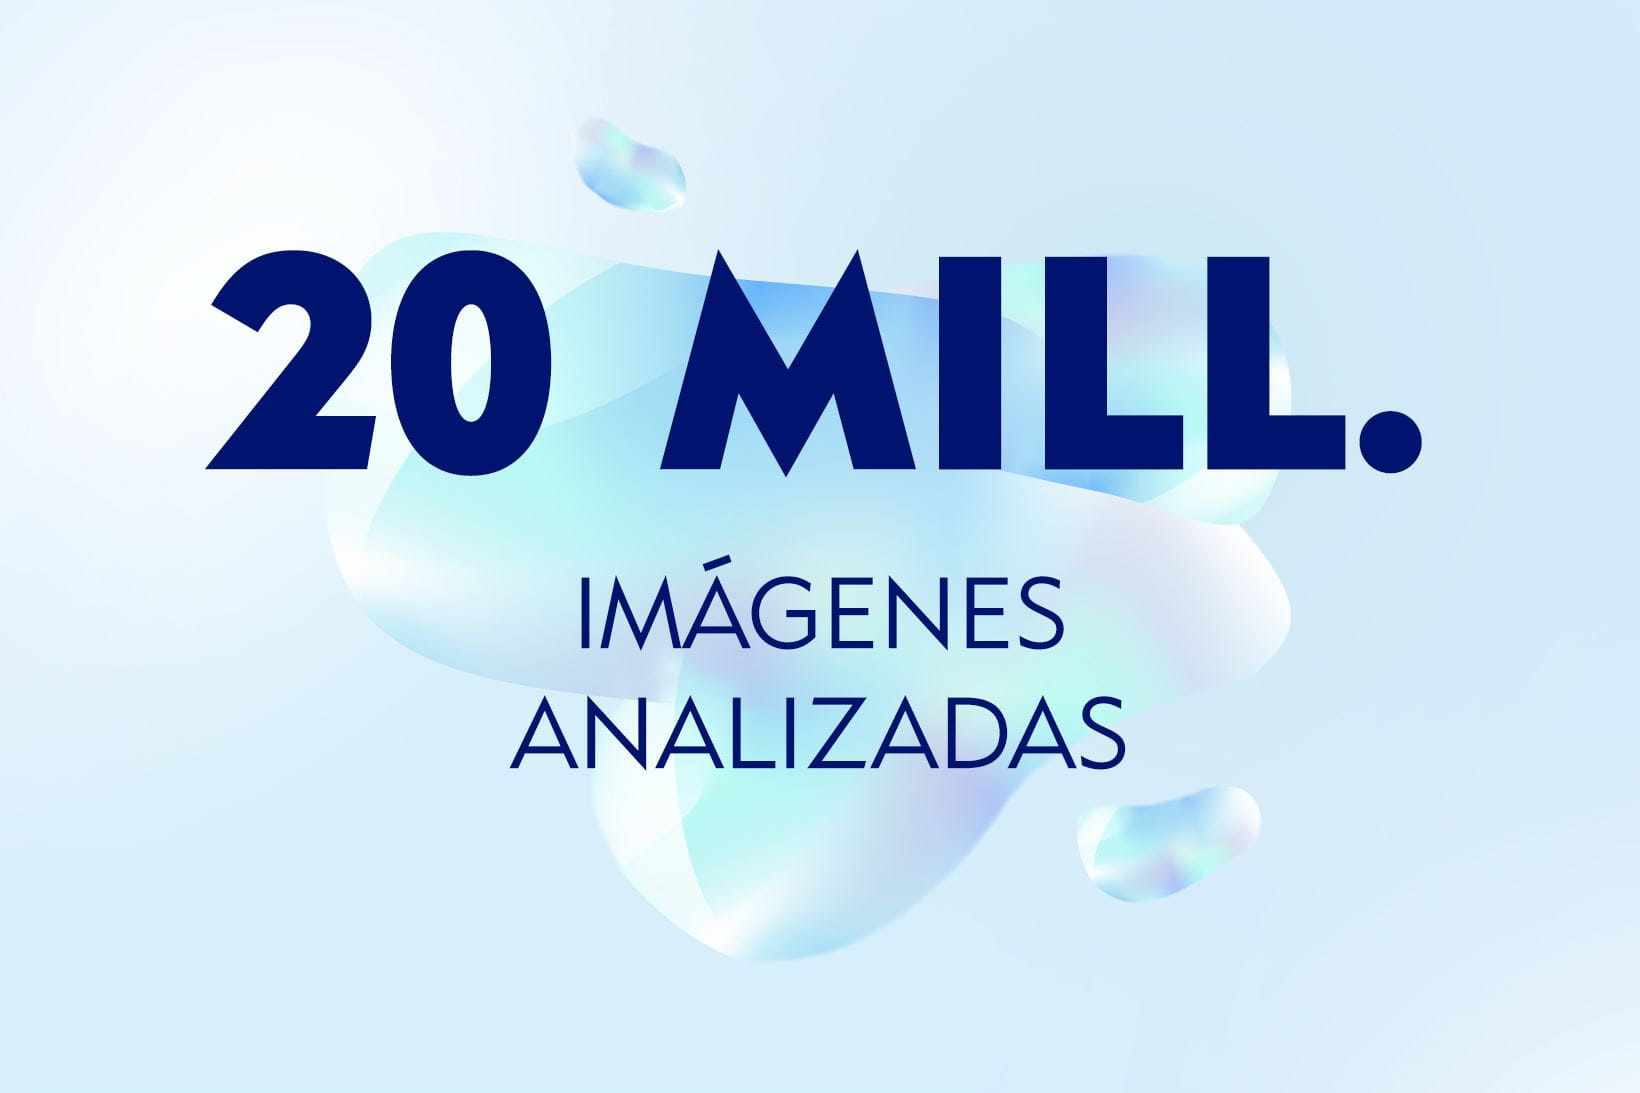 20 Millones de imágenes analizadas